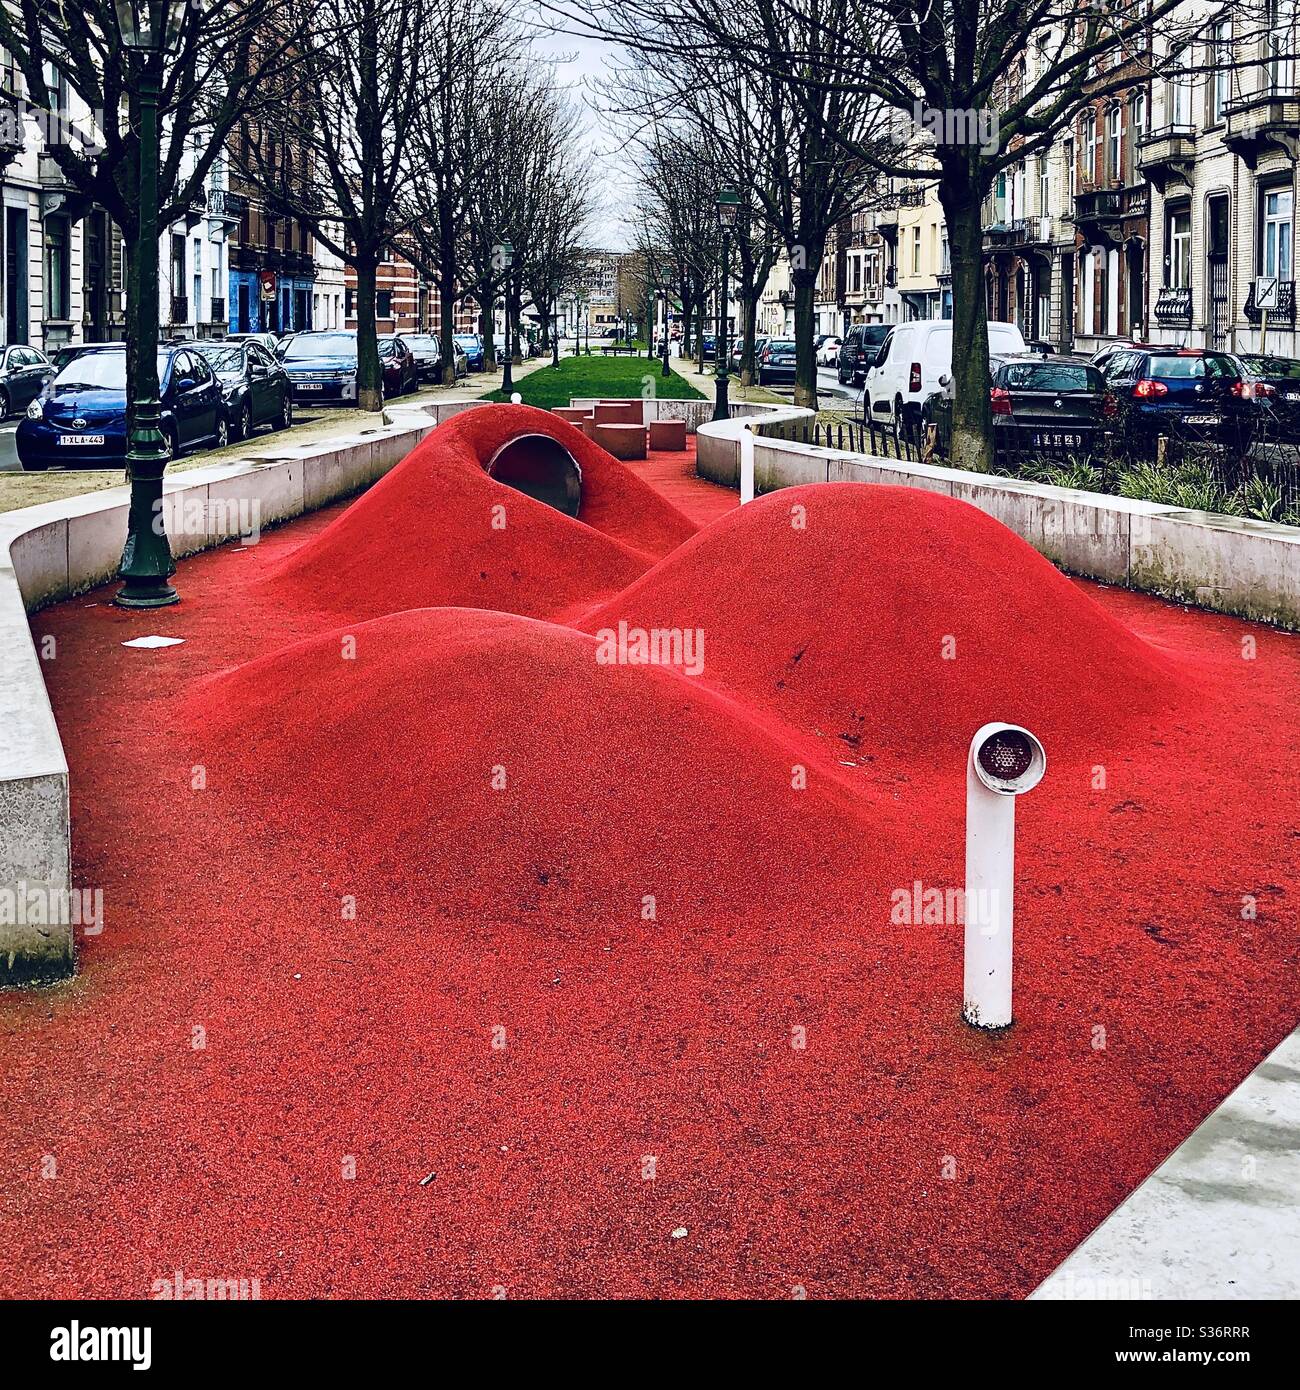 Sicherer und halbweicher, welliger Spielbereich für Kinder mitten in den Straßen der Stadt, Brüssel. Belgien. Stockfoto